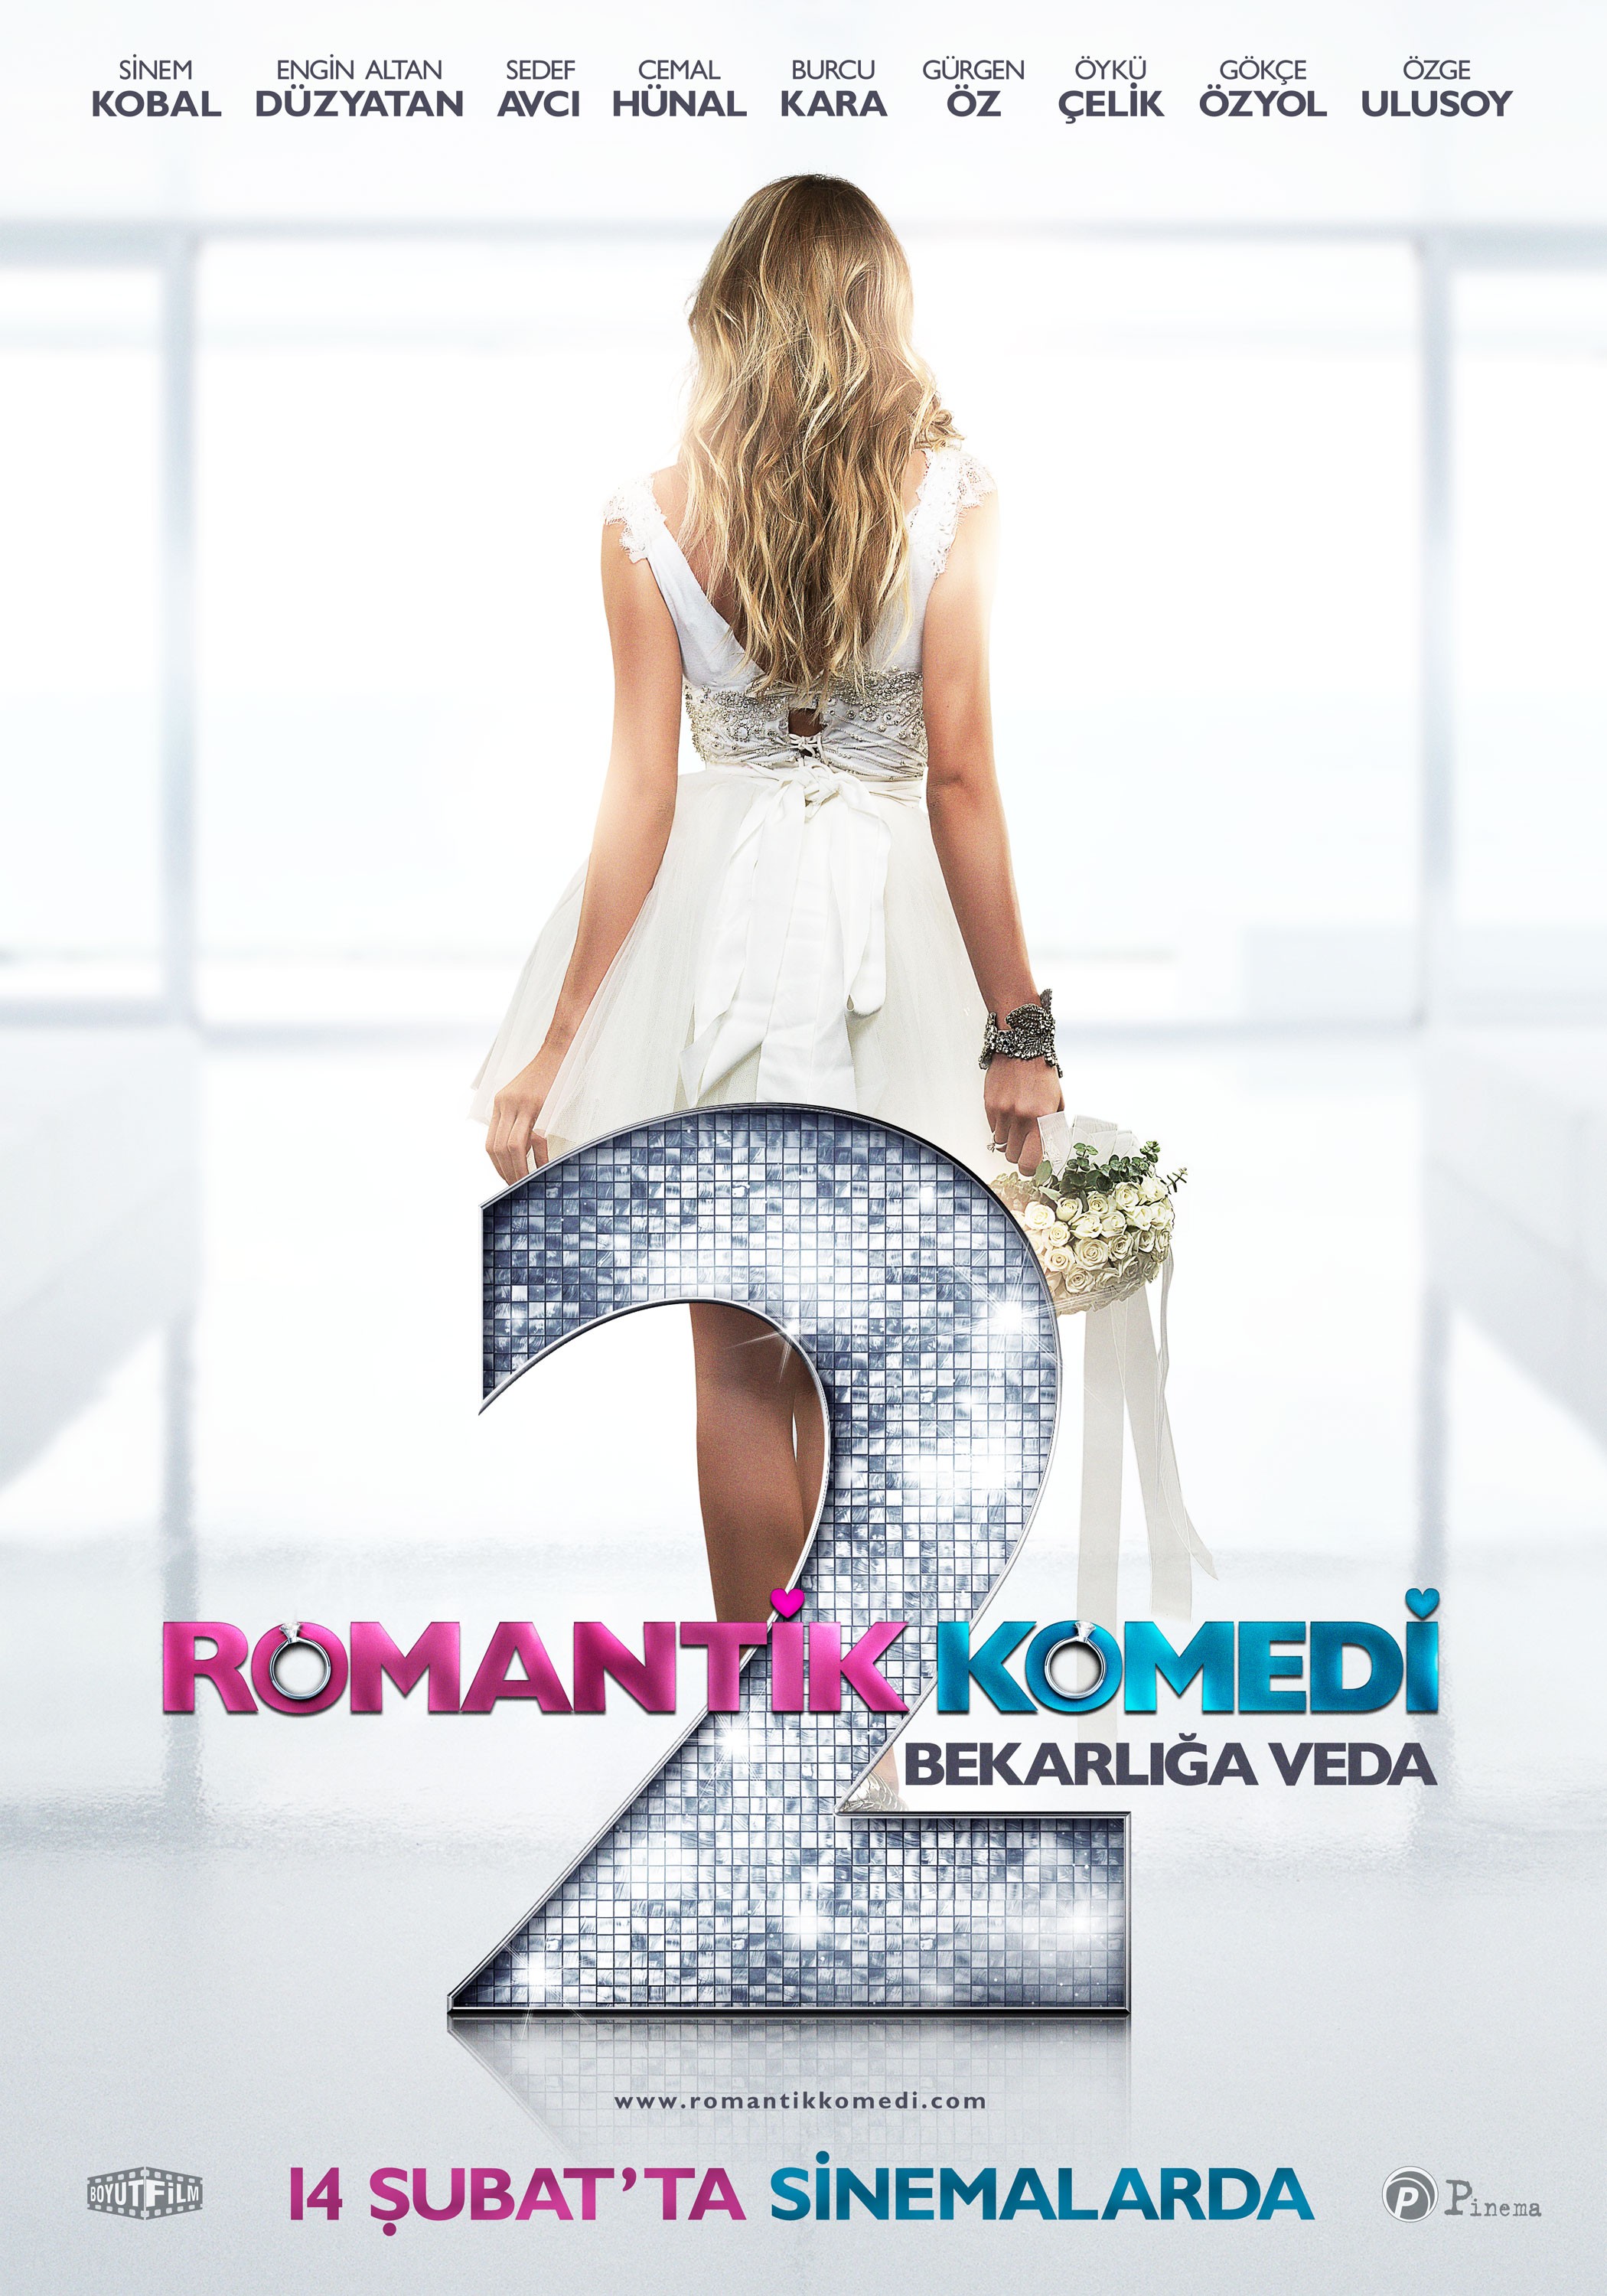 Mega Sized Movie Poster Image for Romantik komedi 2: Bekarliga veda (#3 of 9)